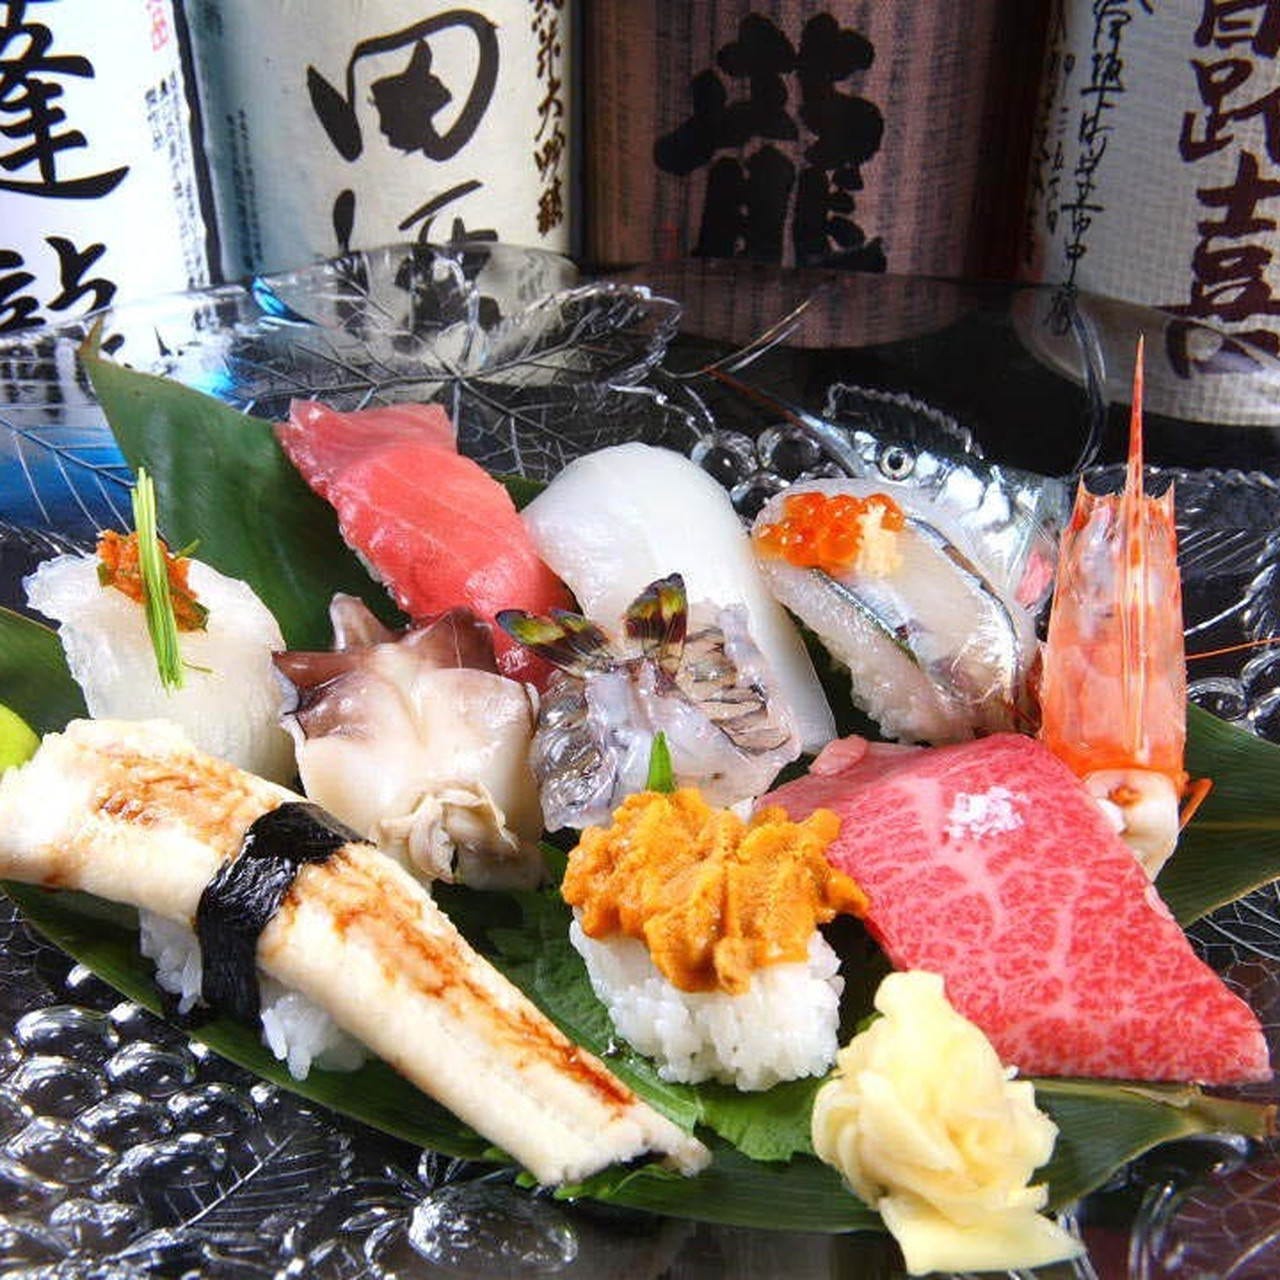 自慢の寿司や新鮮な魚介を楽しめるコース料理をご用意